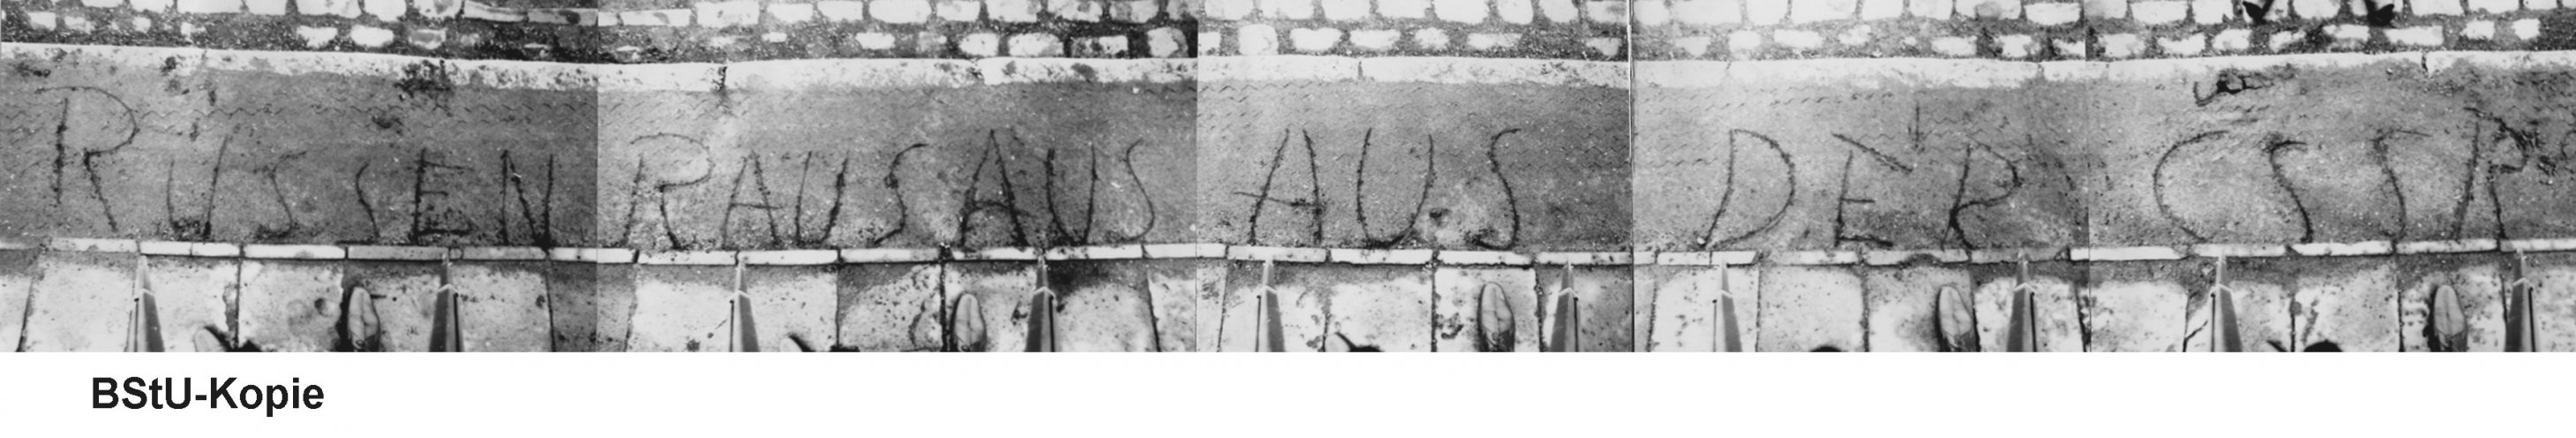 "Russen raus aus der CSSR!" Diese Losung hat ein 19-jähriger auf der Bahnhofstraße in Bützow angebracht. Quelle: BStU, MfS, BV Schwerin, AU 11/69, GA Bd. 2, Bl. 59